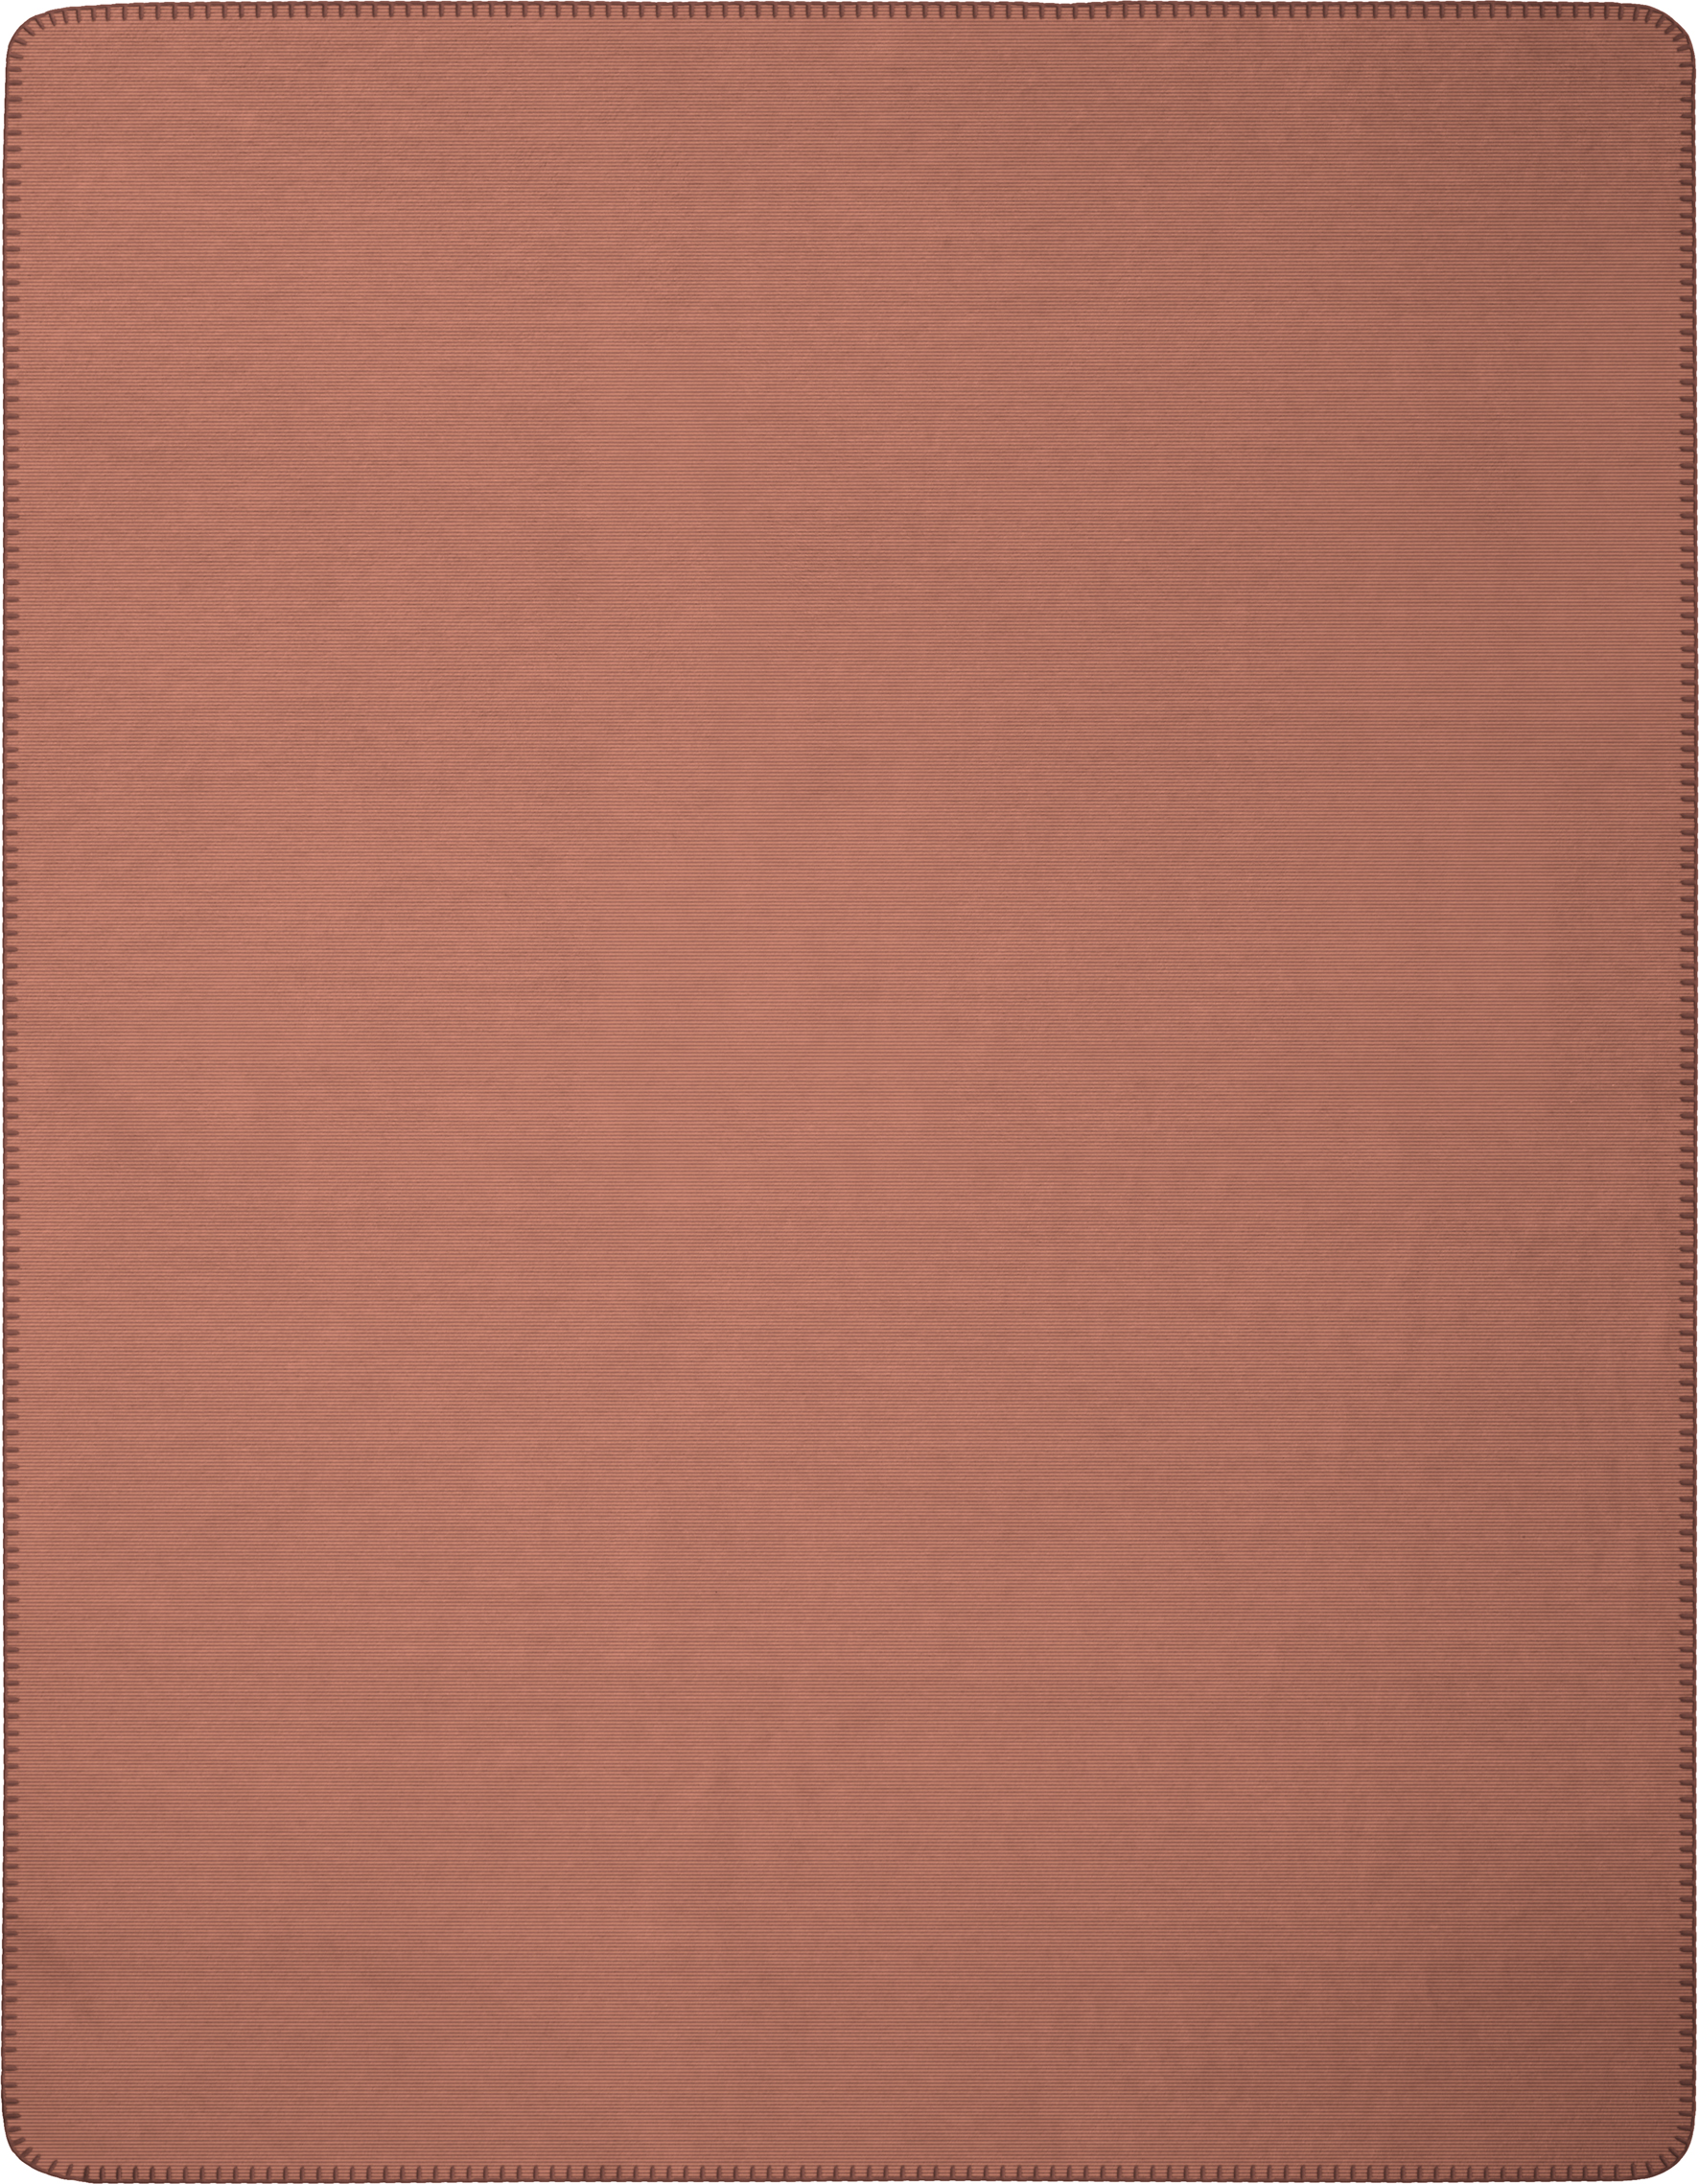 Wohndecke "Melange Doubleface" aus Baumwollmischgewebe in 150x200 cm in Dunkellachs-Karamell - Vorderseite